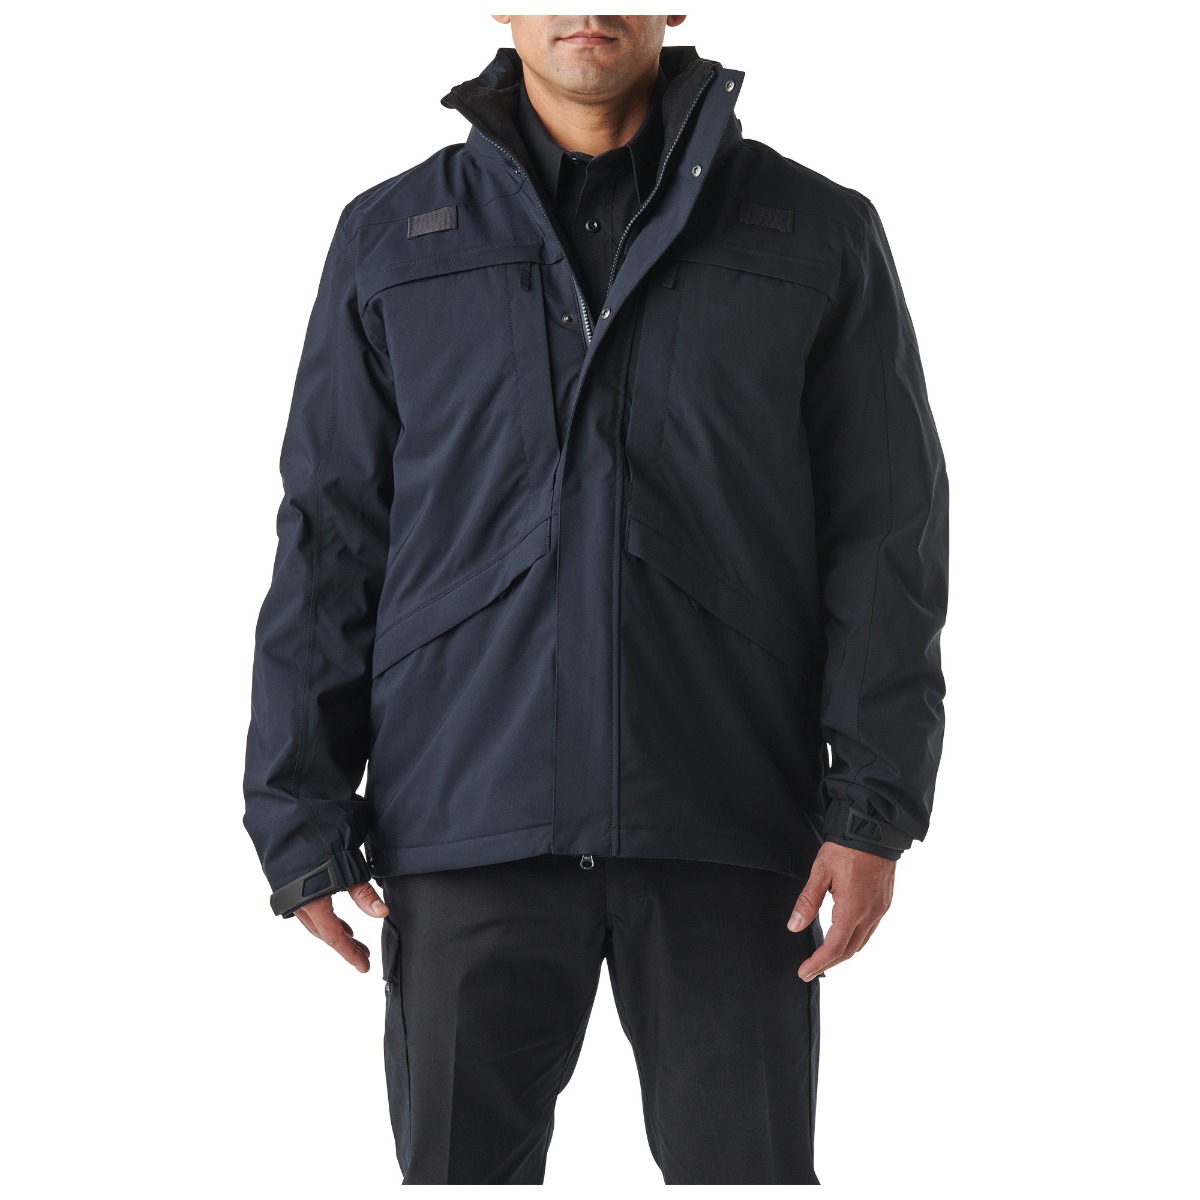 Buy/Shop Jackets – Fire/EMS Online in LA – Guidry's Uniforms